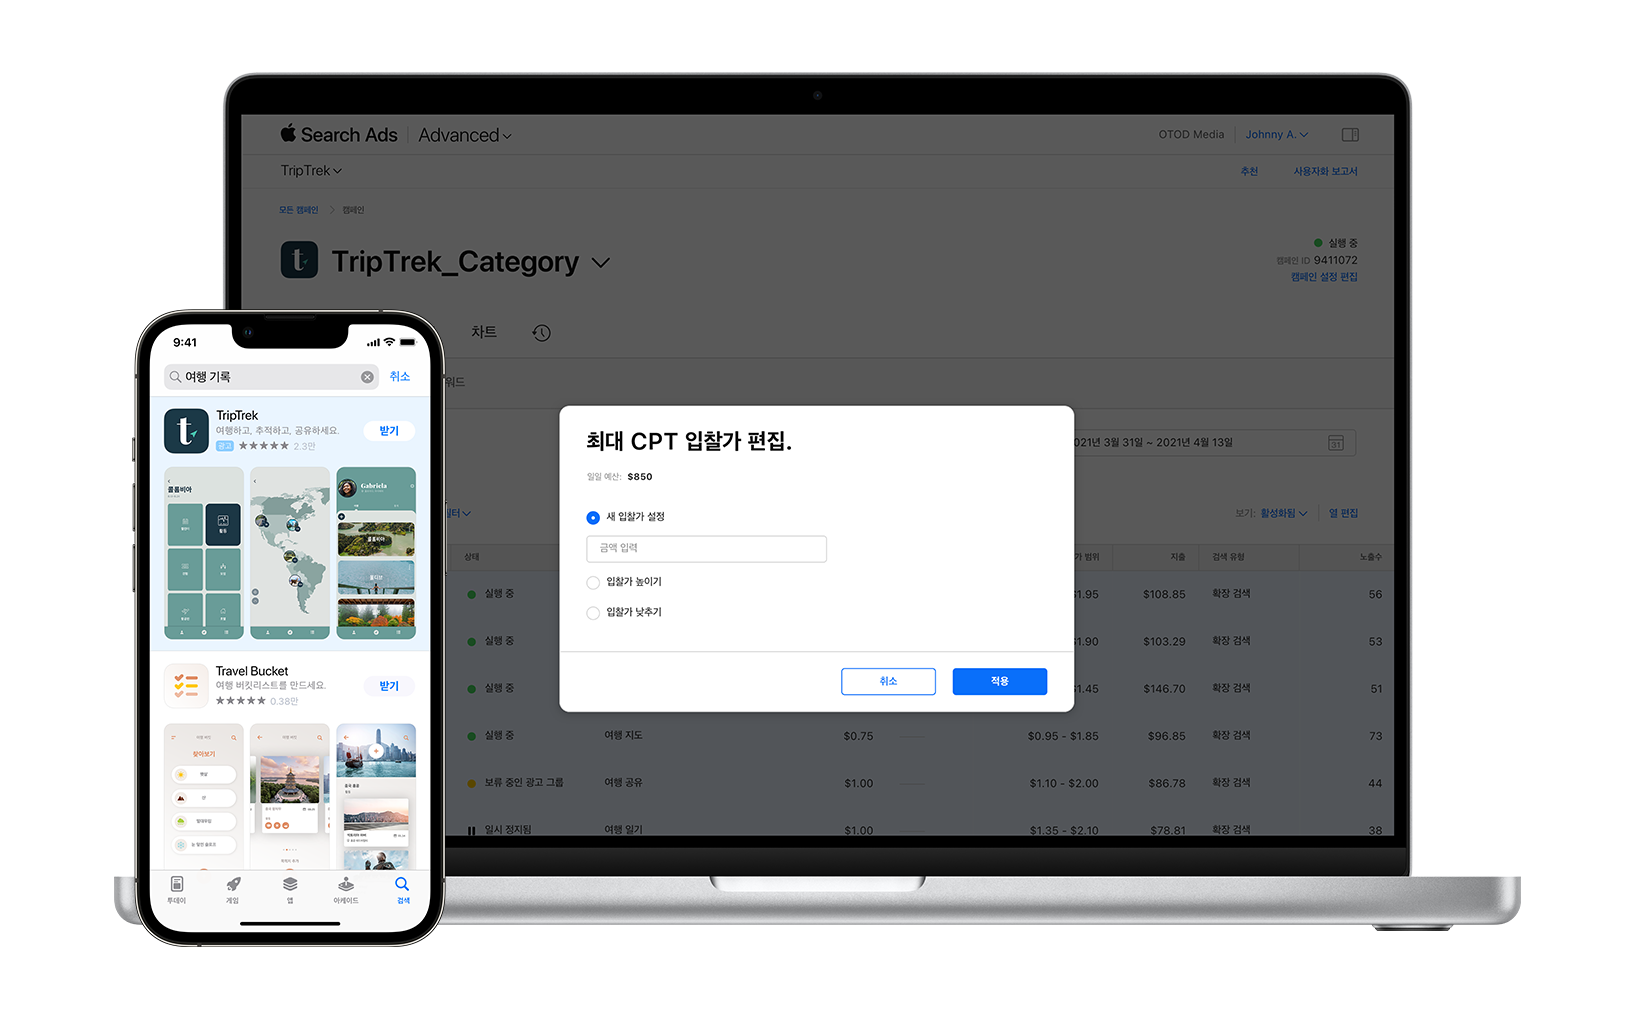 예제 앱 TripTrek에 대한 CPT(탭당 비용) 입찰가 편집 모달에서 입찰가를 10% 높입니다.